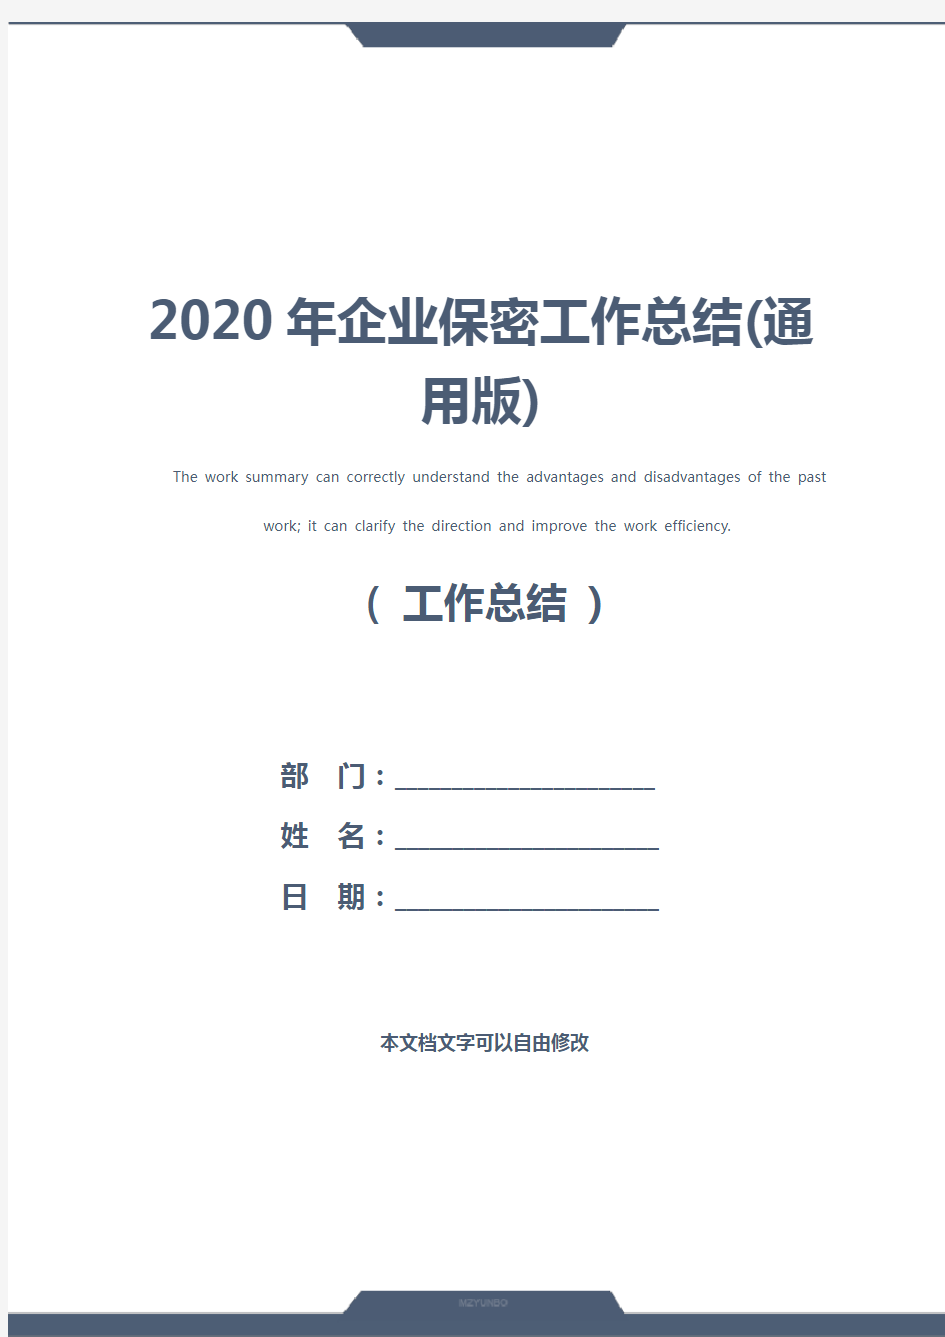 2020年企业保密工作总结(通用版)